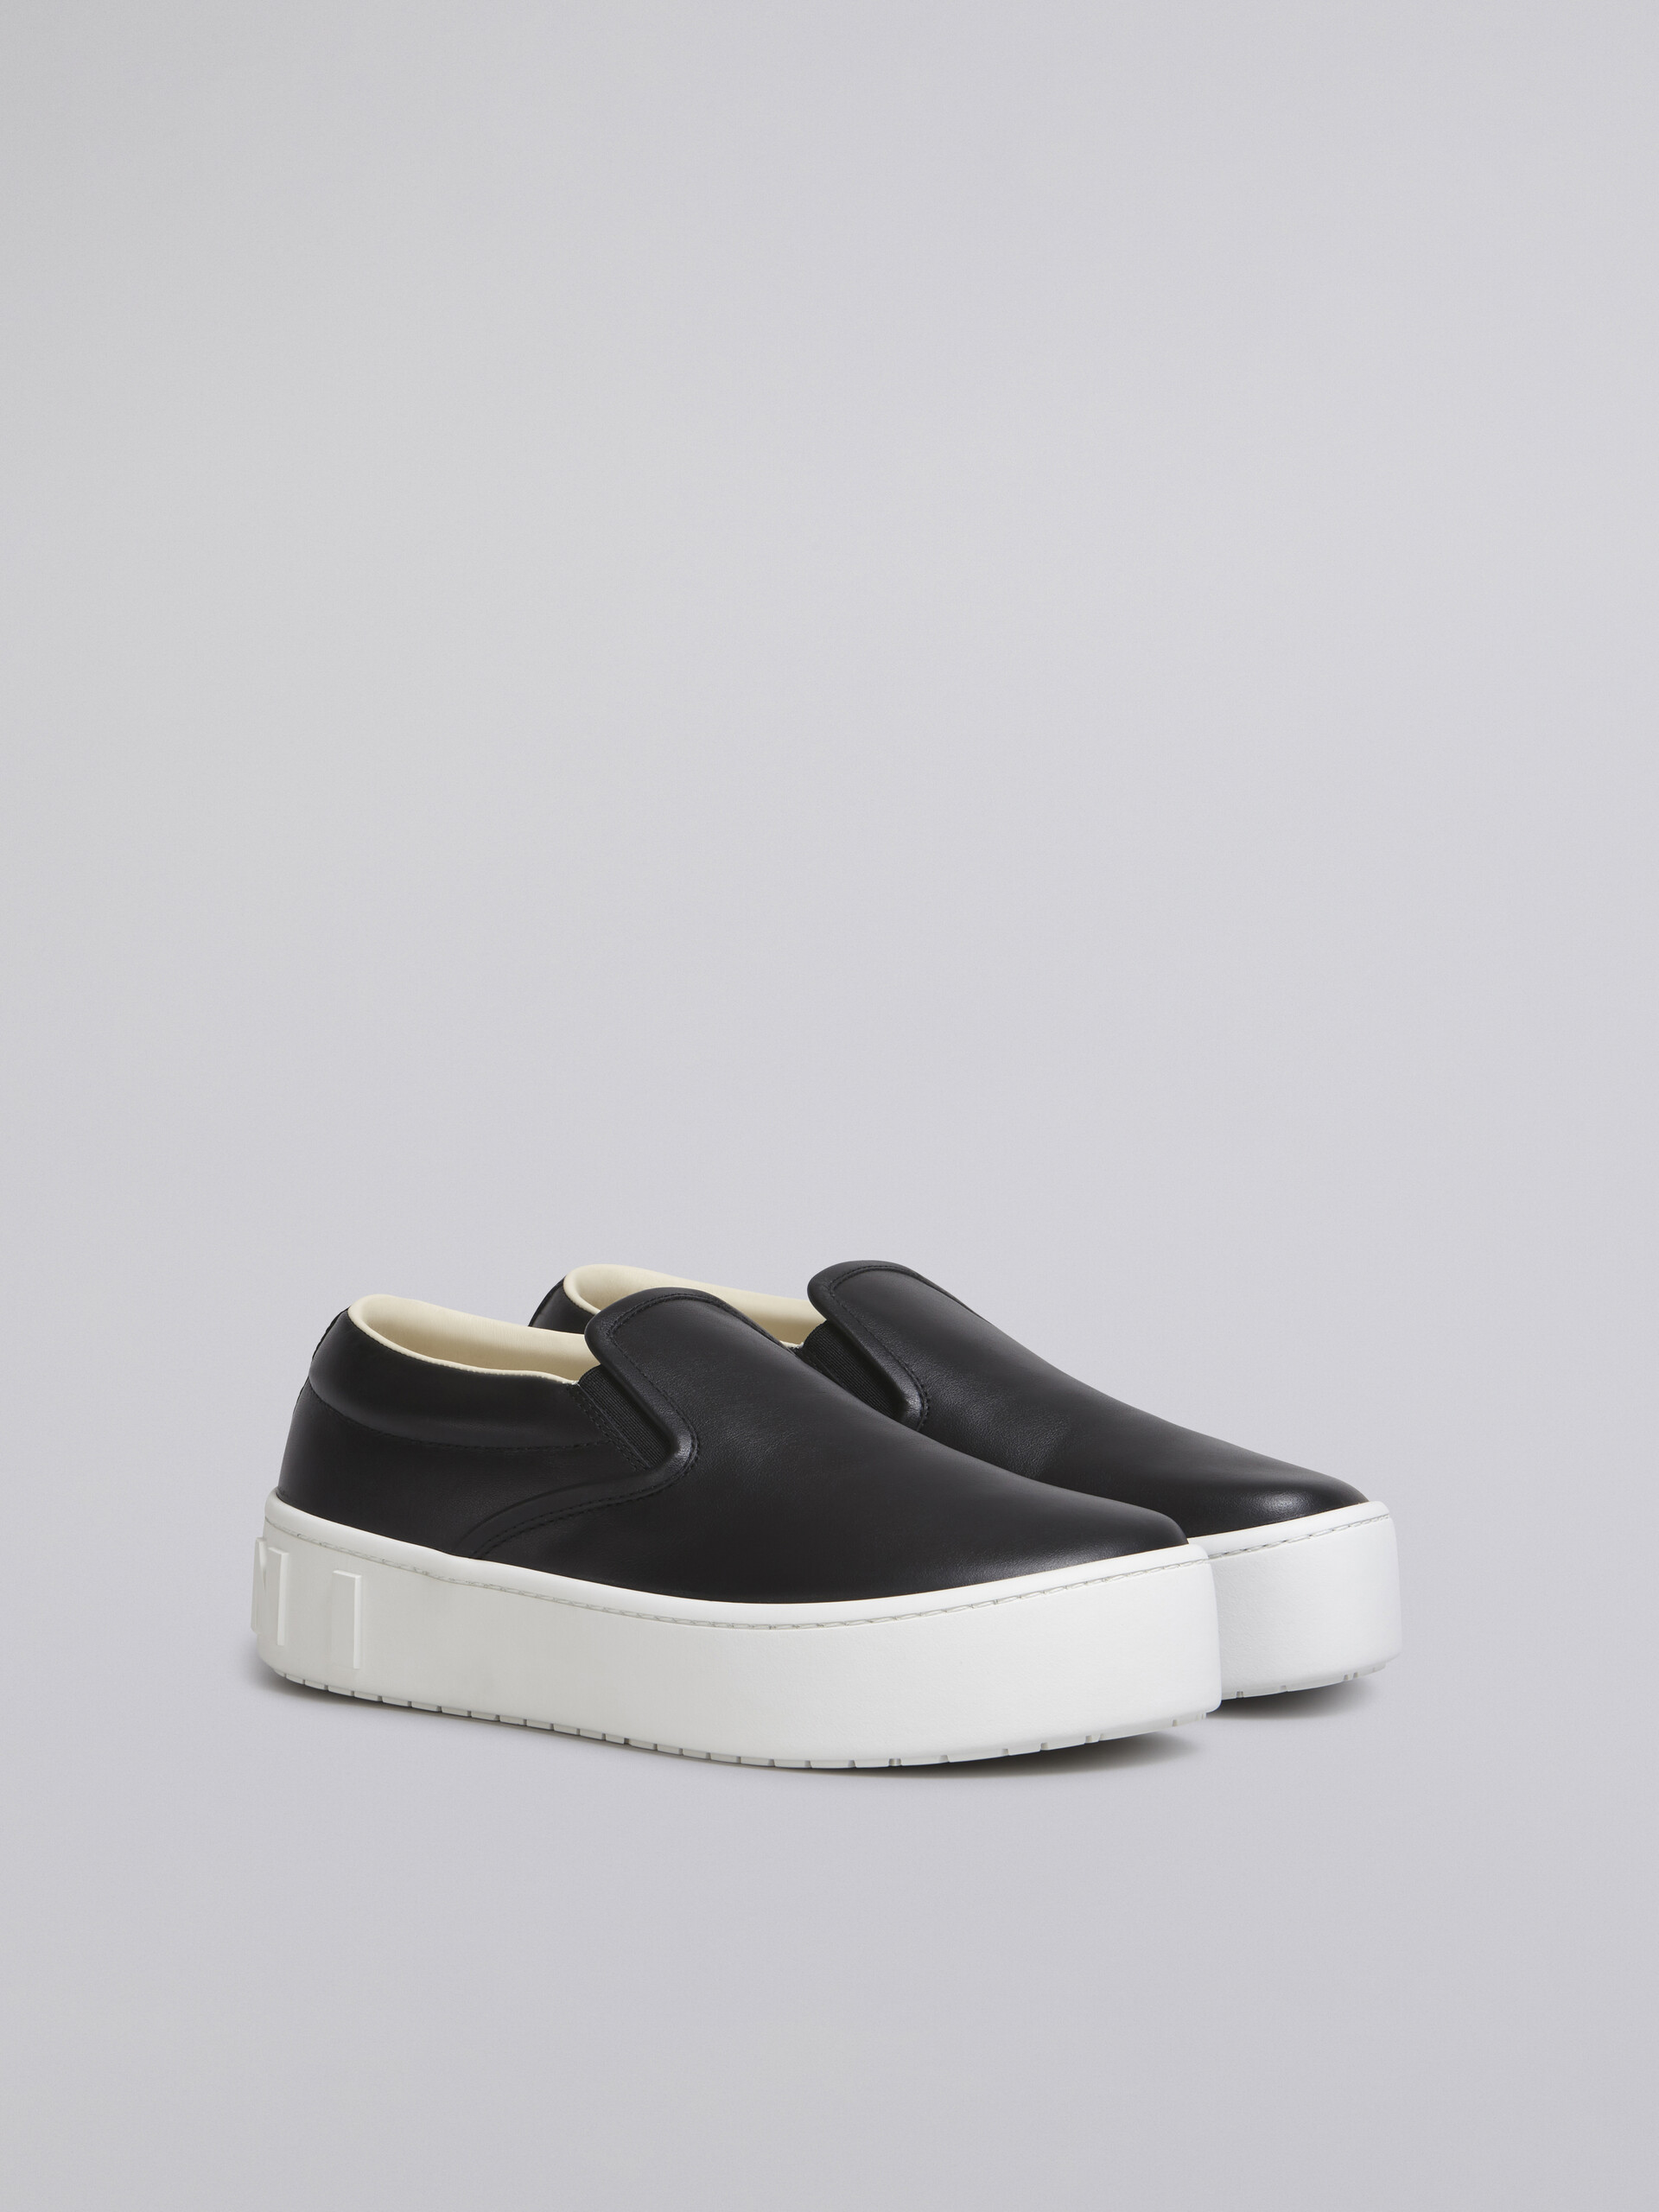 Sneaker slip-on in vitello nero con maxi logo Marni in rilievo - Sneakers - Image 2